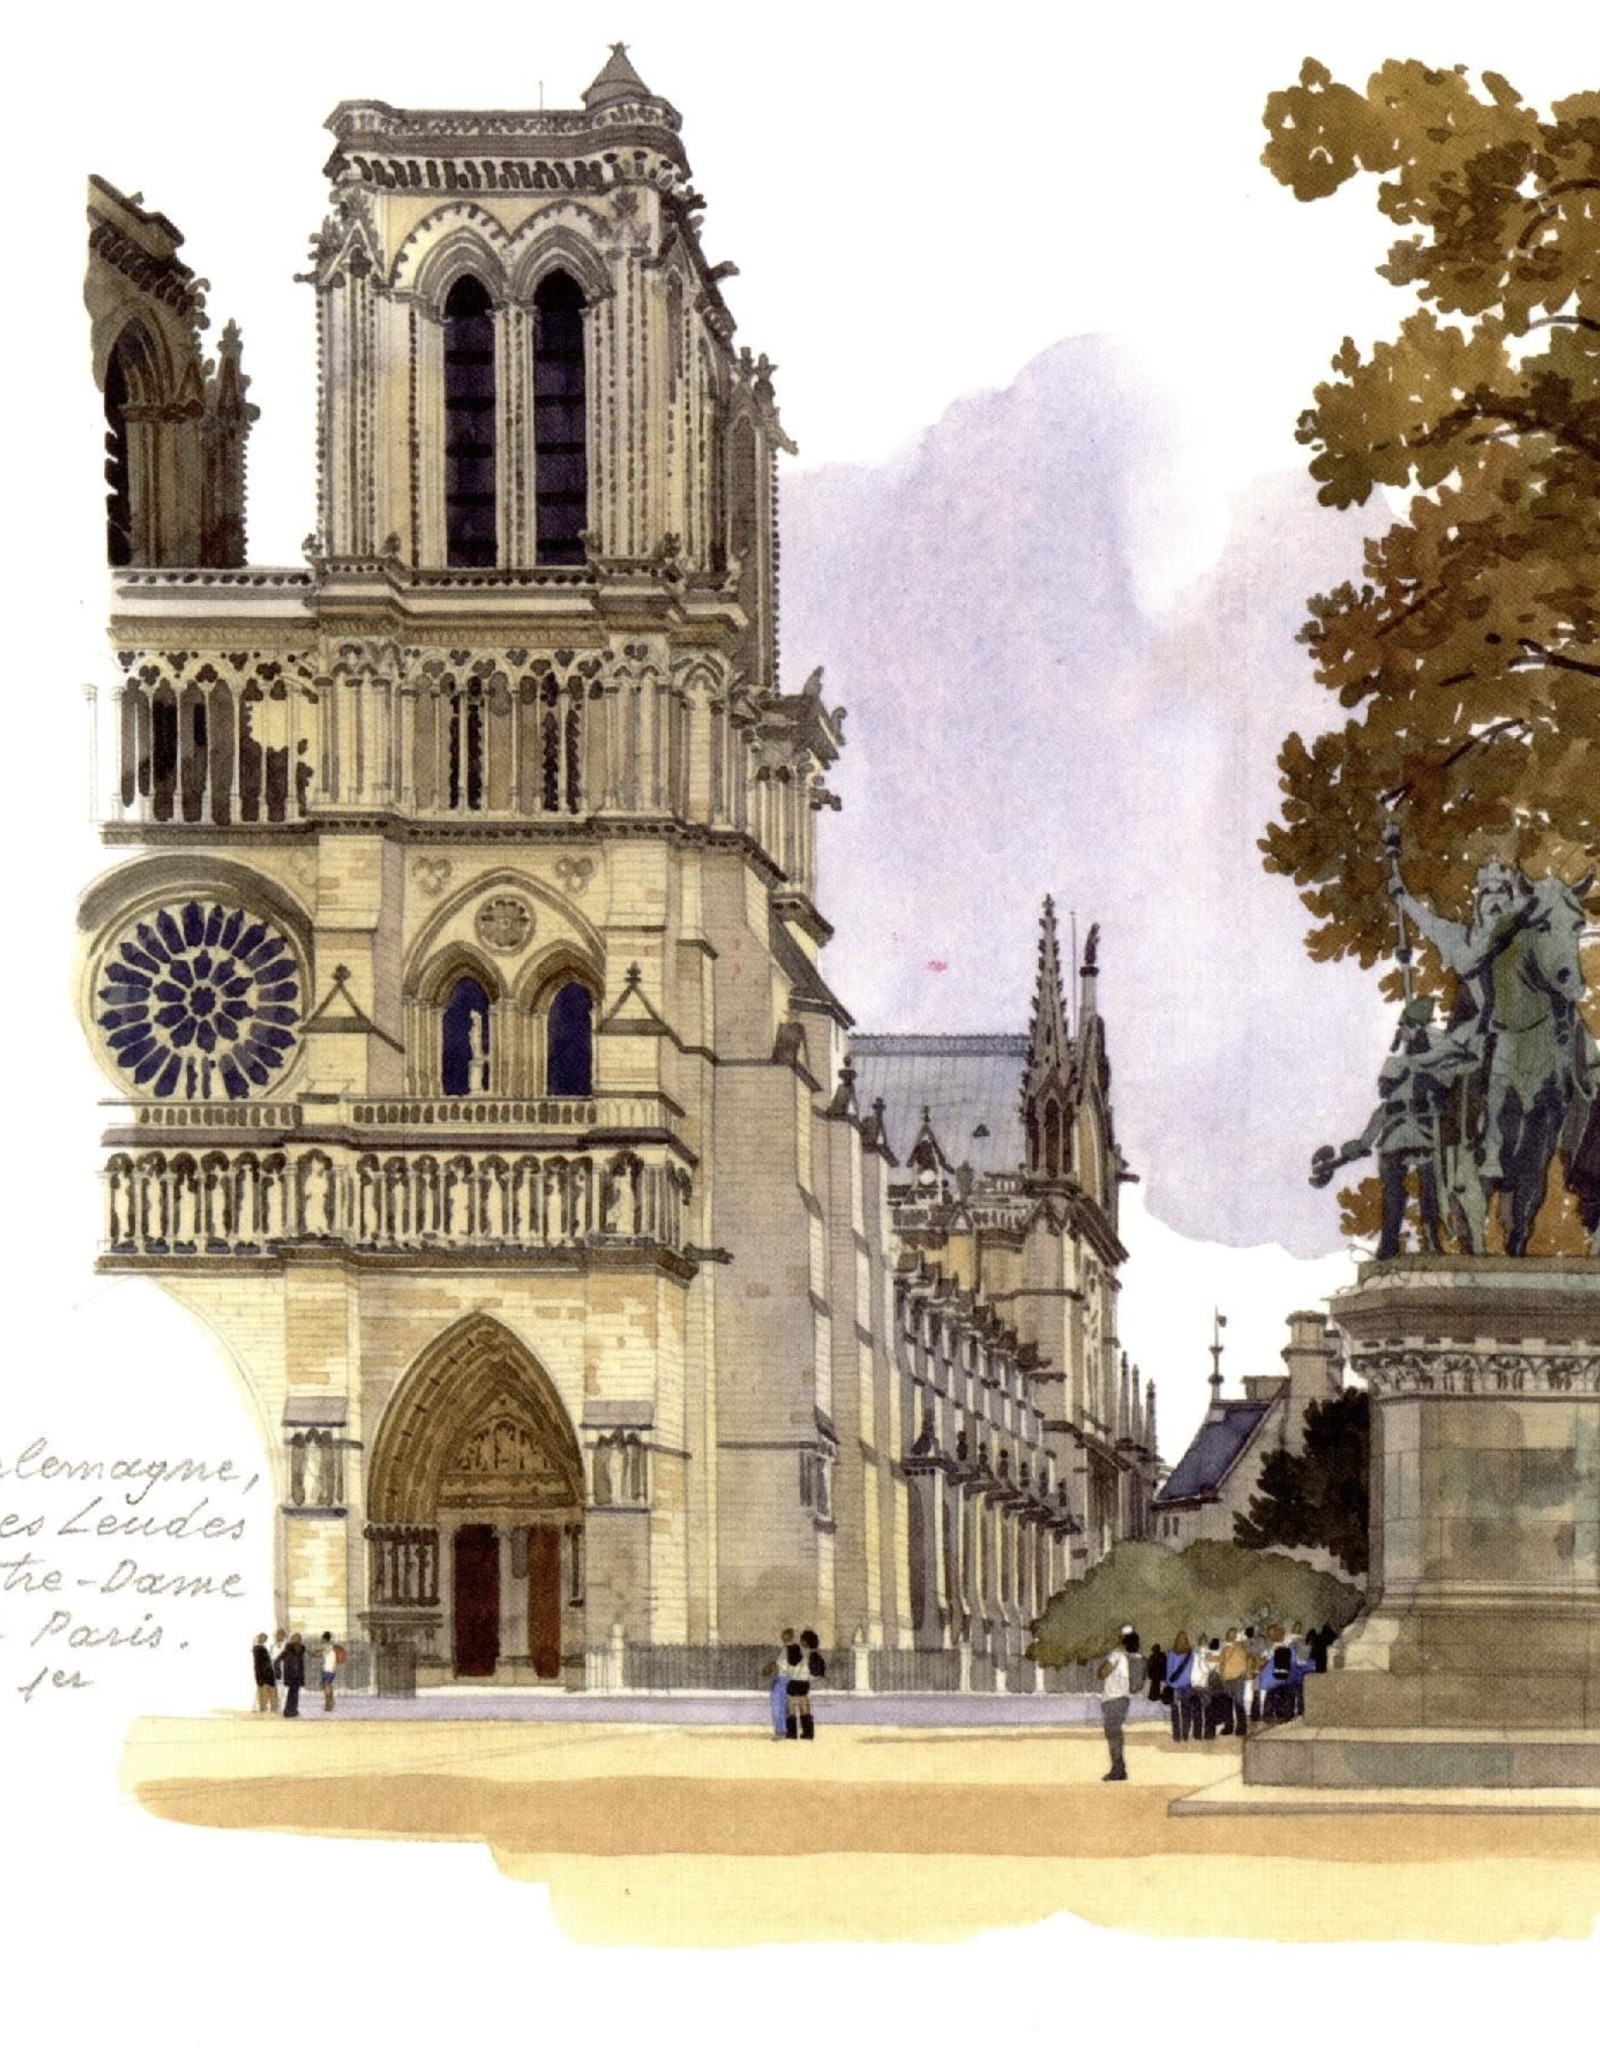 Notre-Dame de Paris Greeting Card - 6" x 6"